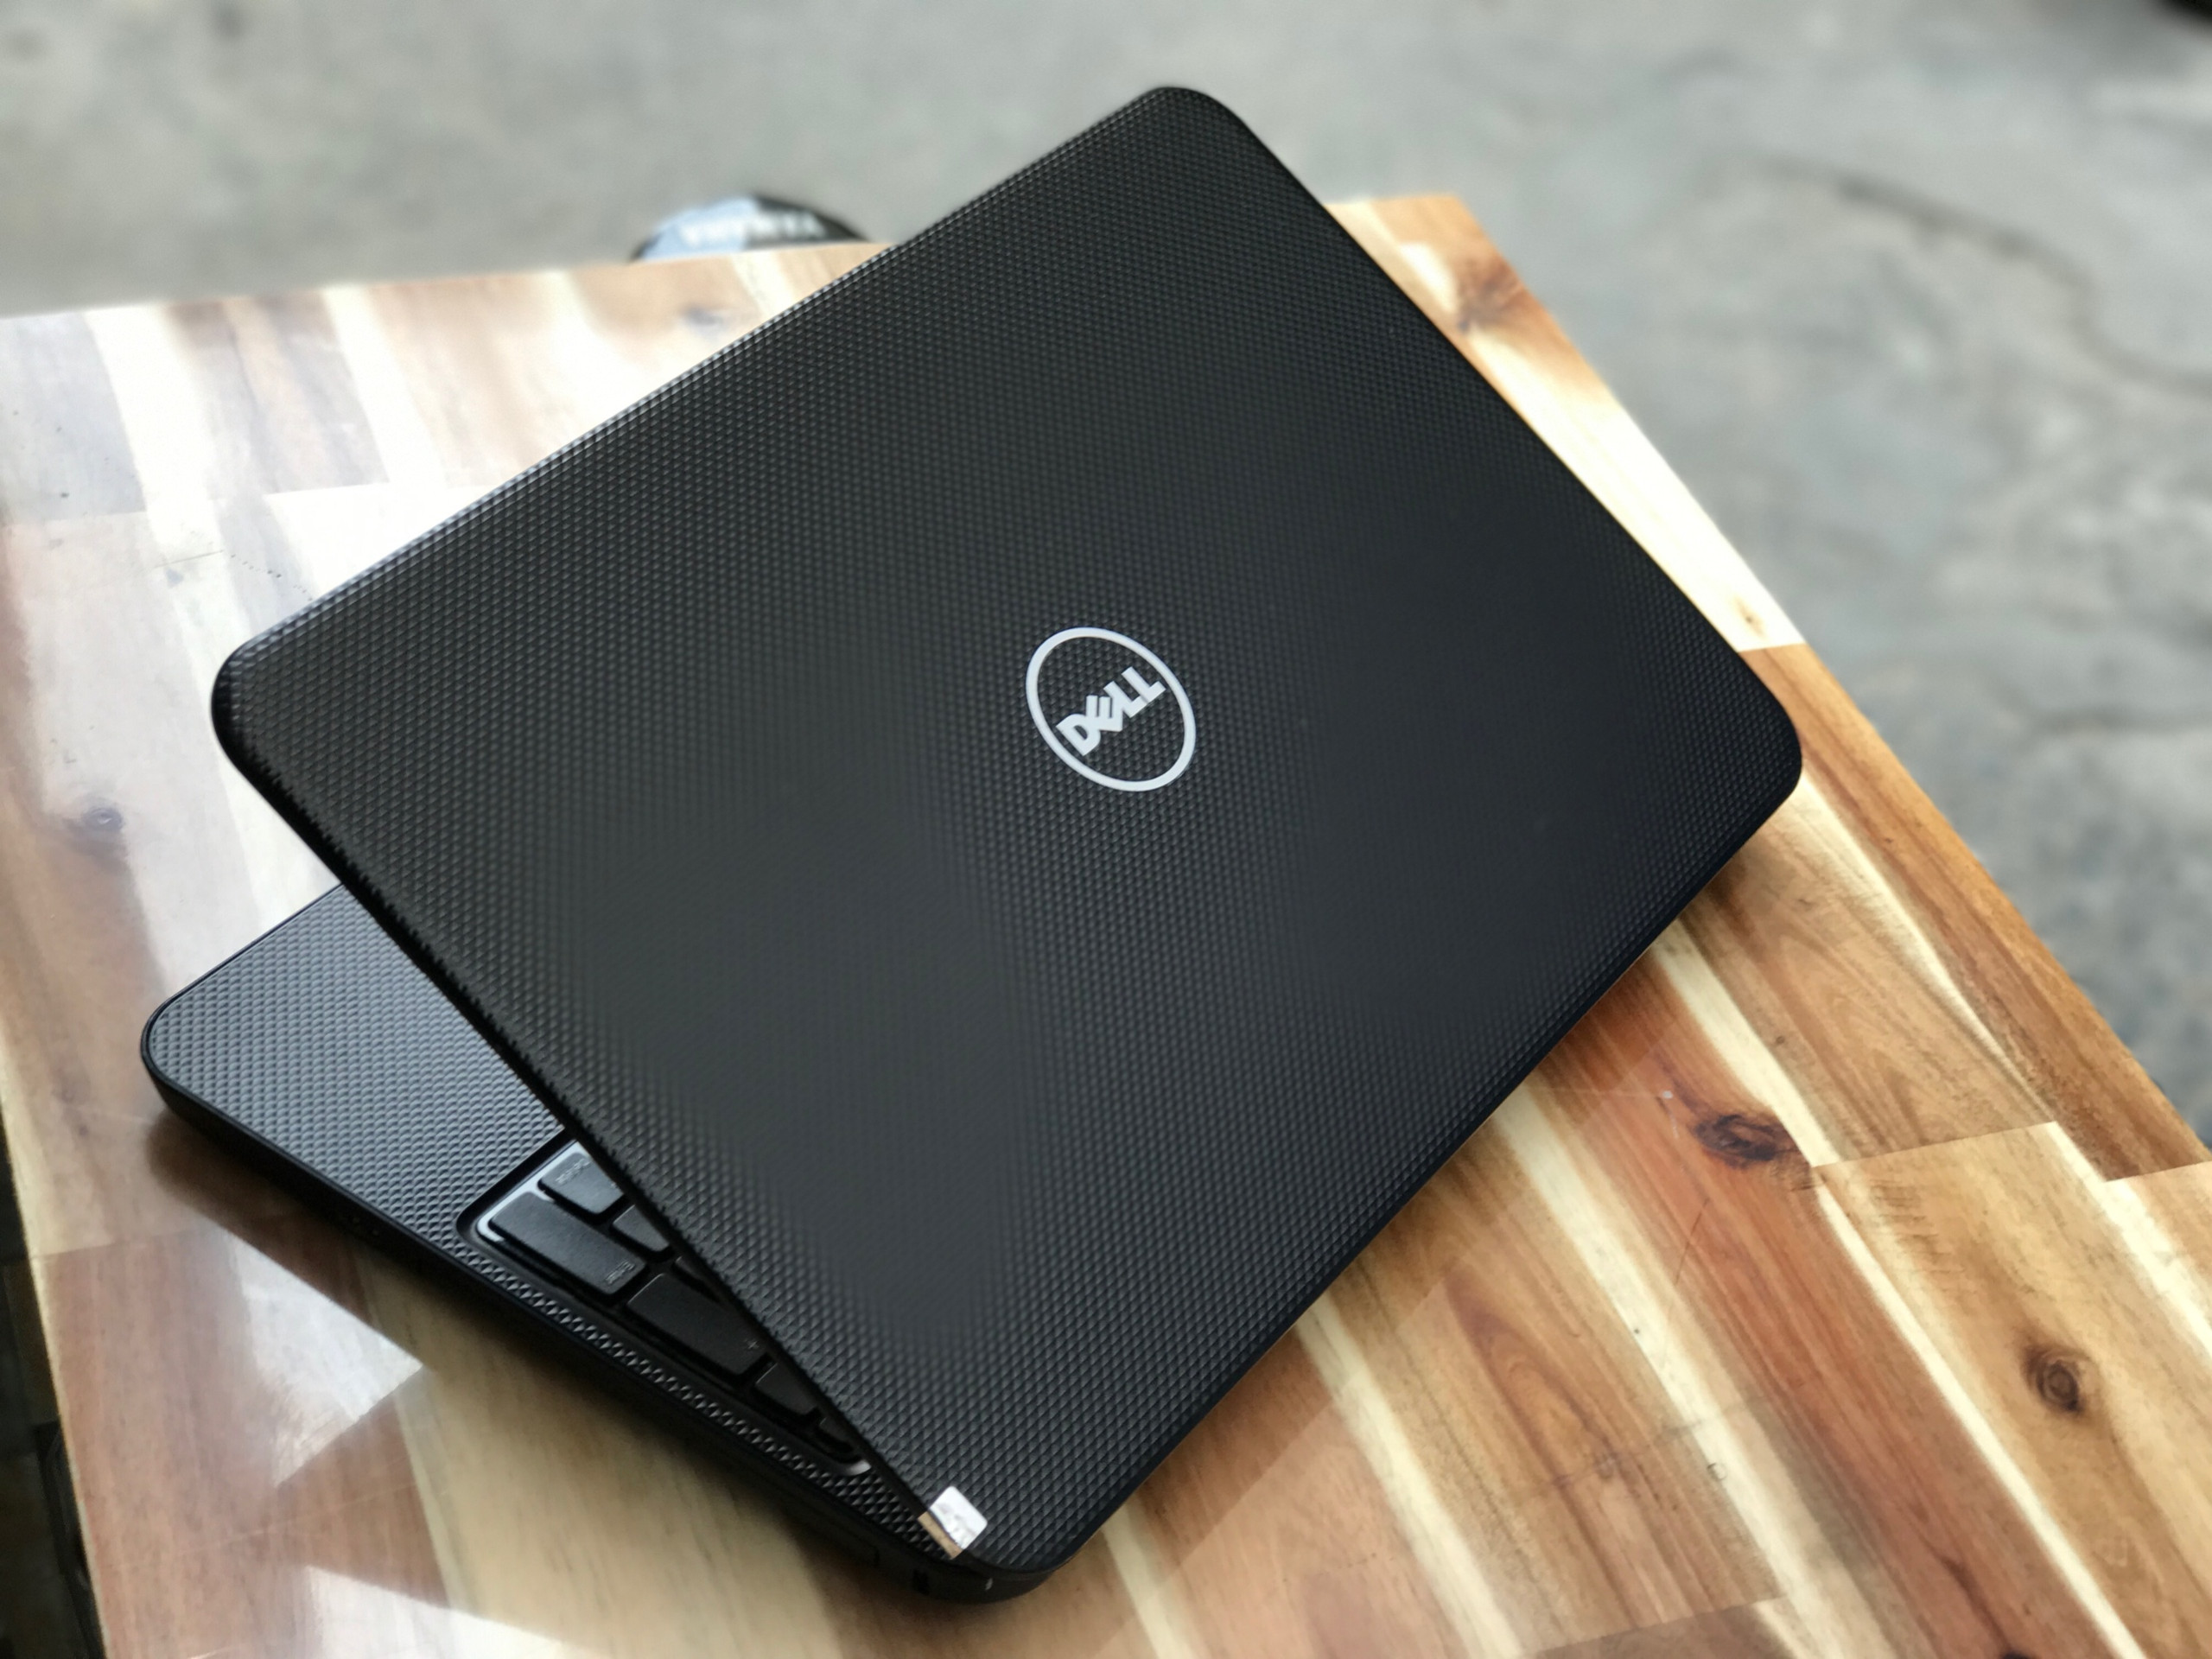 Laptop Dell Inspiron 3537, i5 4200U 4G 500G Vga rời 2G Đẹp zin 100% Giá rẻ